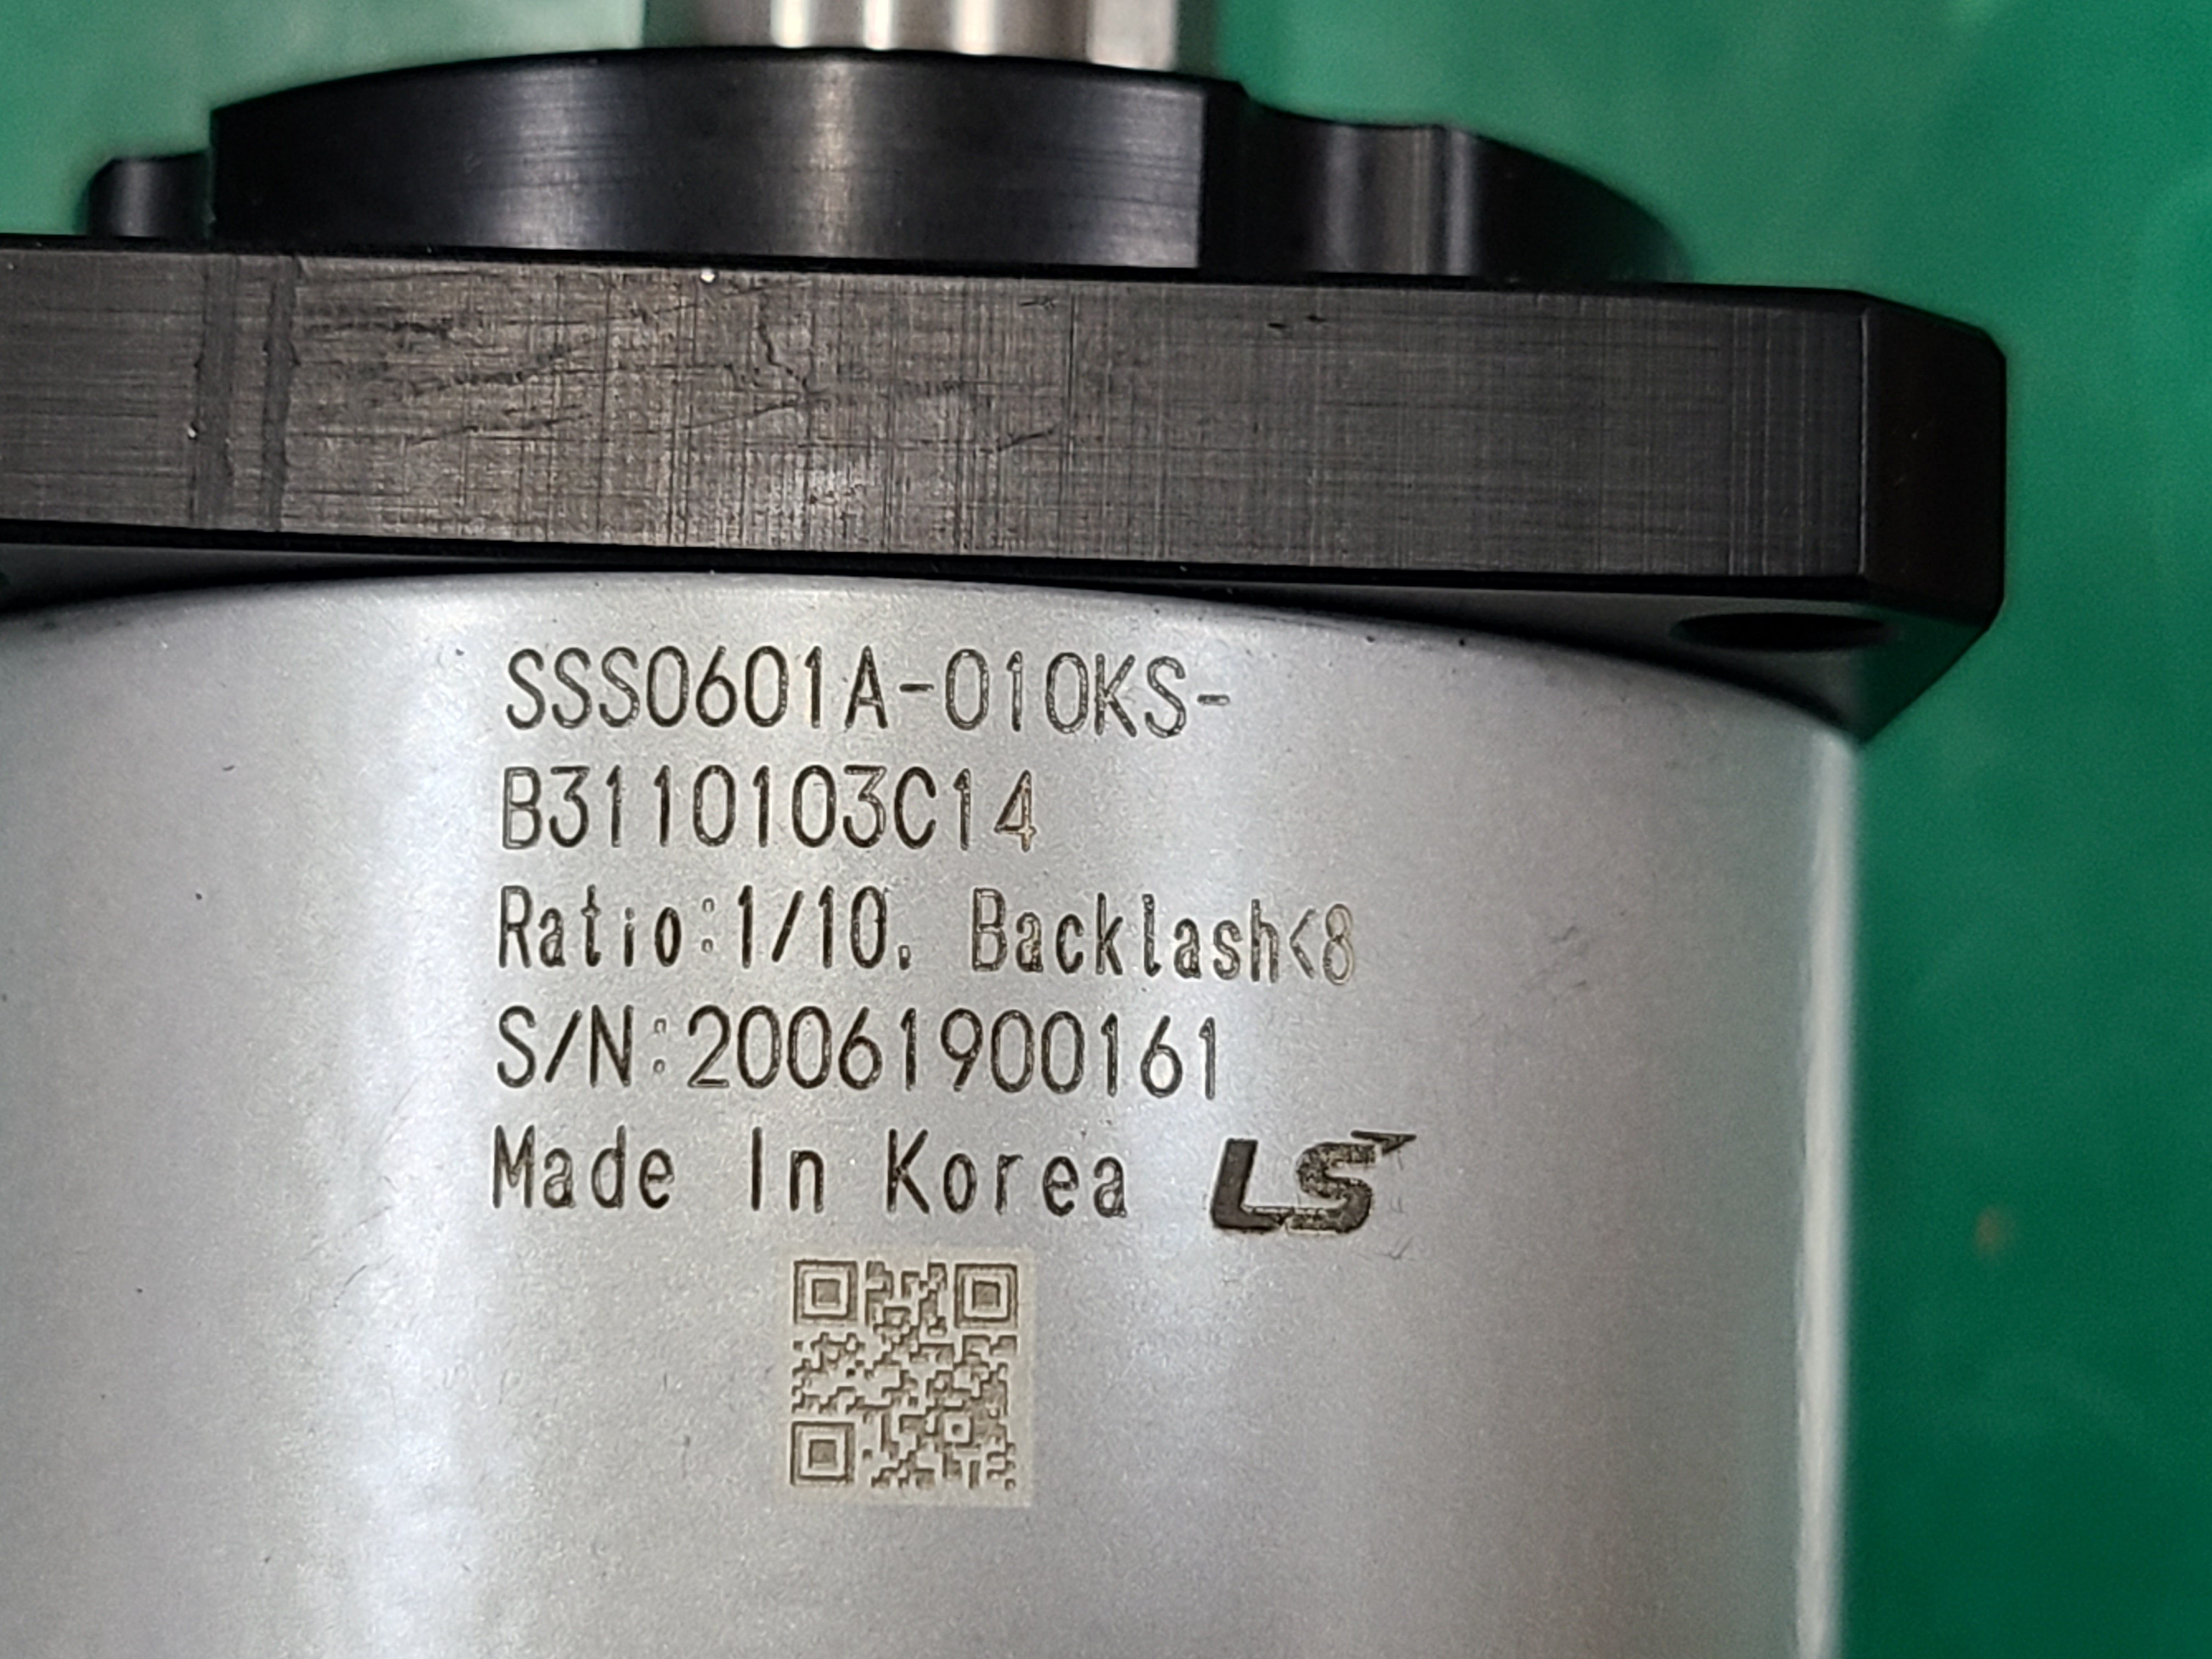 (미사용중고) LS SERVO MOTOR 감속기 SSS0601A-010KS-B3110103C14 (10:1) 엘에스 서보모타 감속기